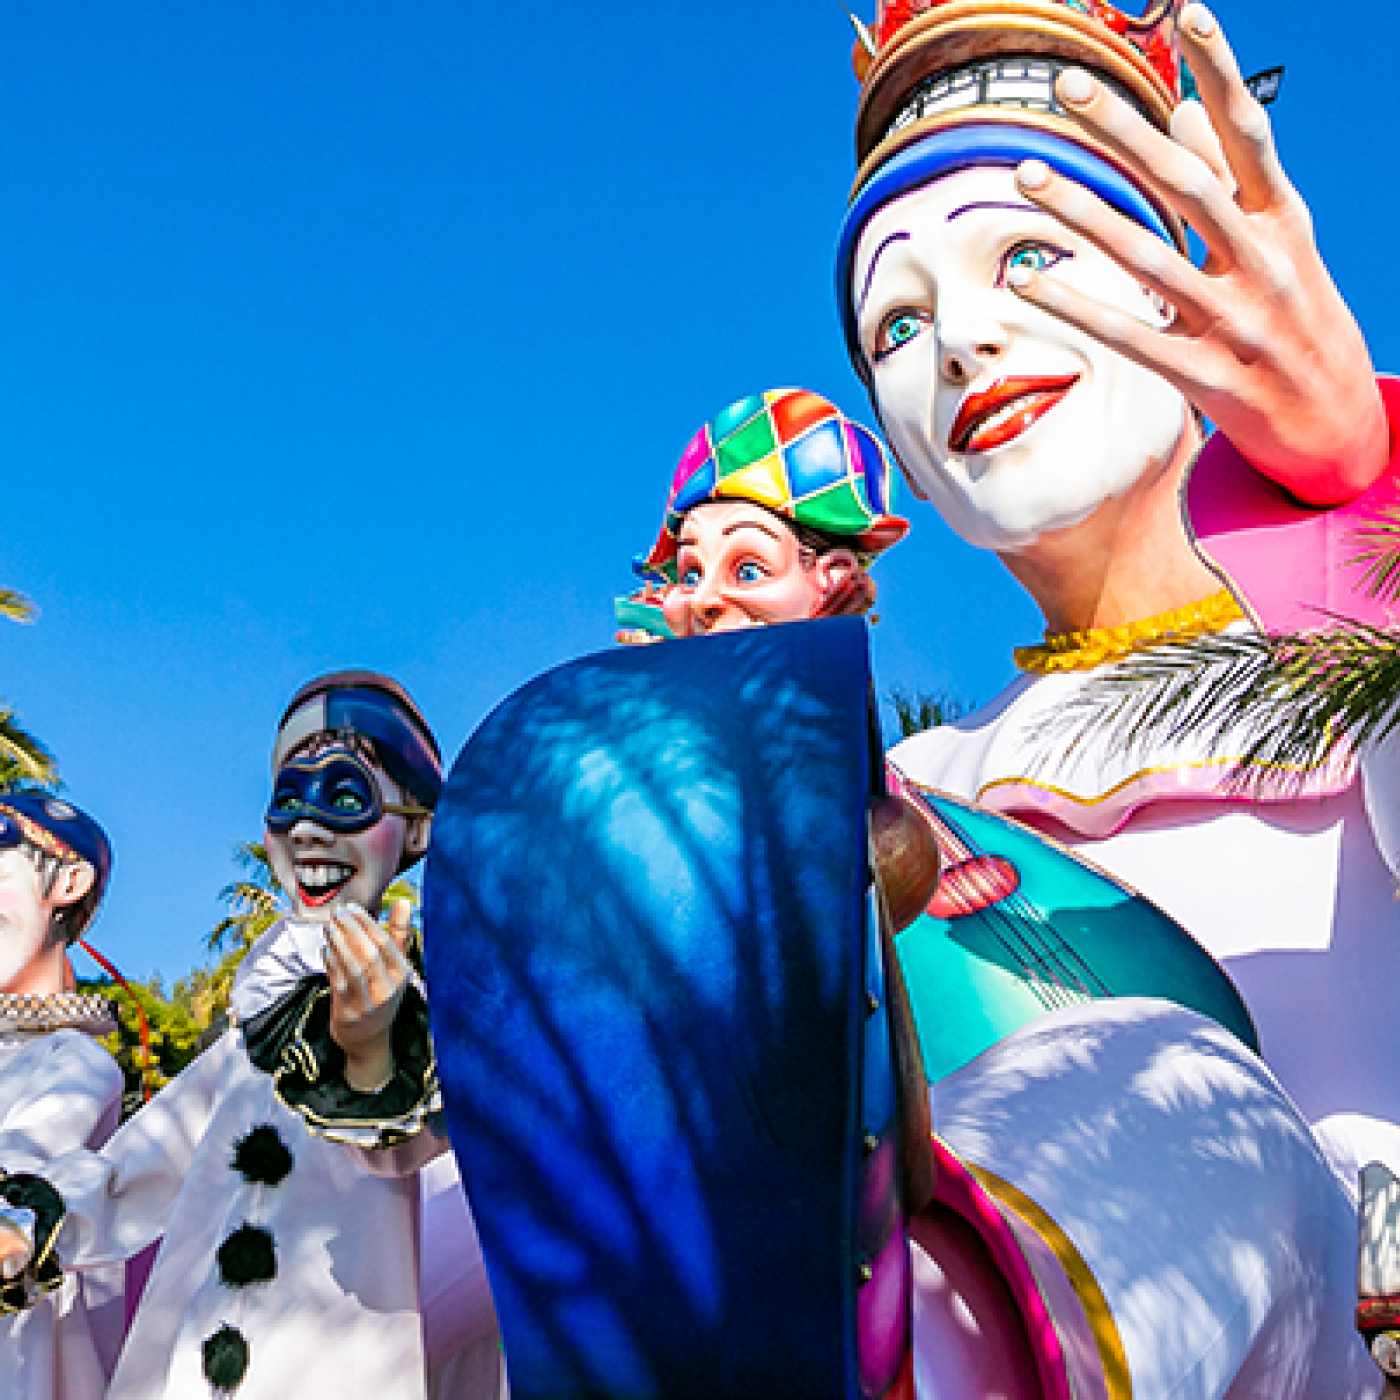 Le Carnaval de Nice fait son grand retour aujourd’hui !